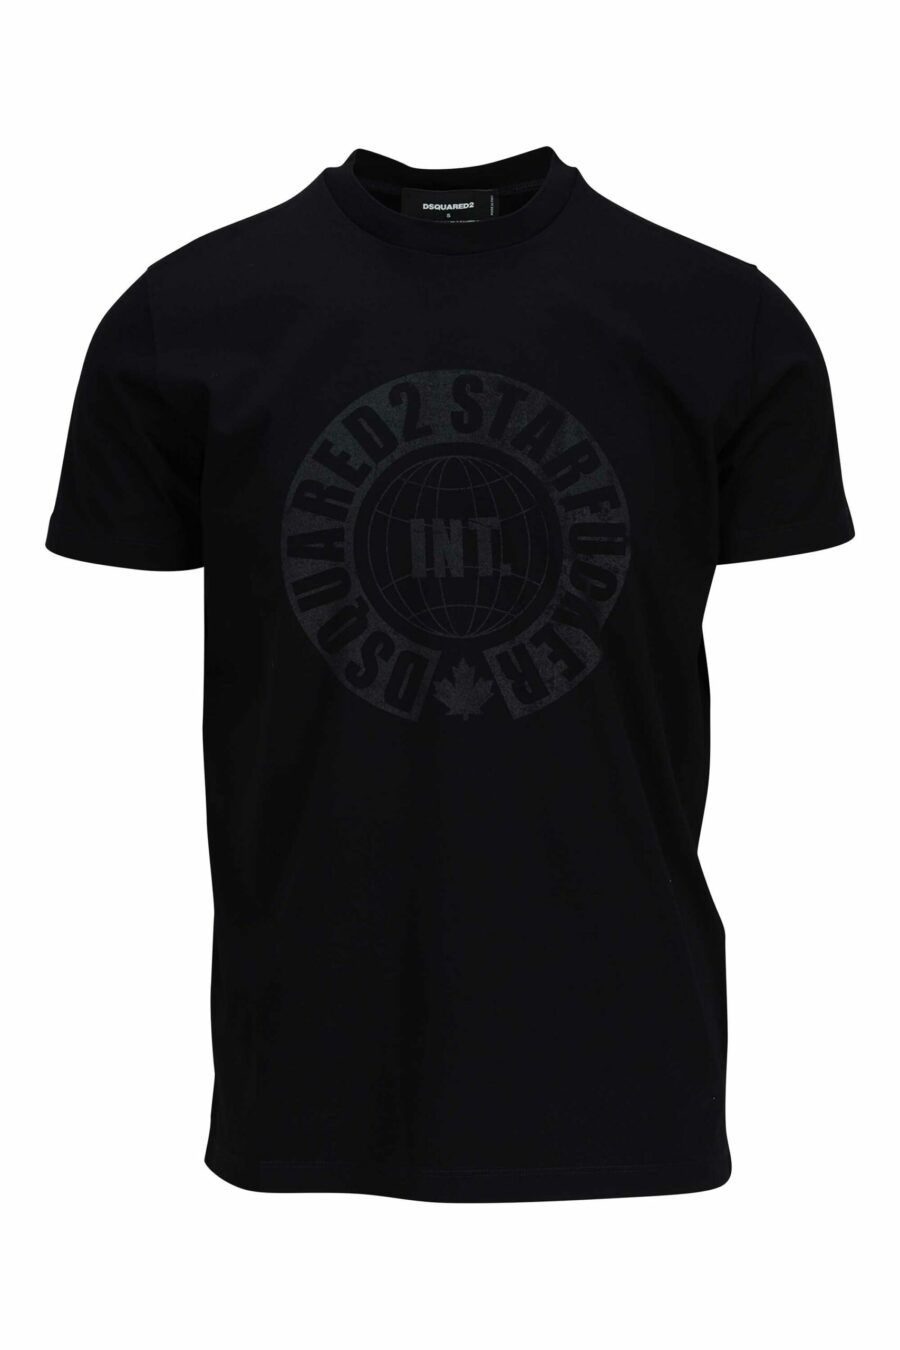 Camiseta negra con maxilogo monocromático redondo - 8054148086091 scaled